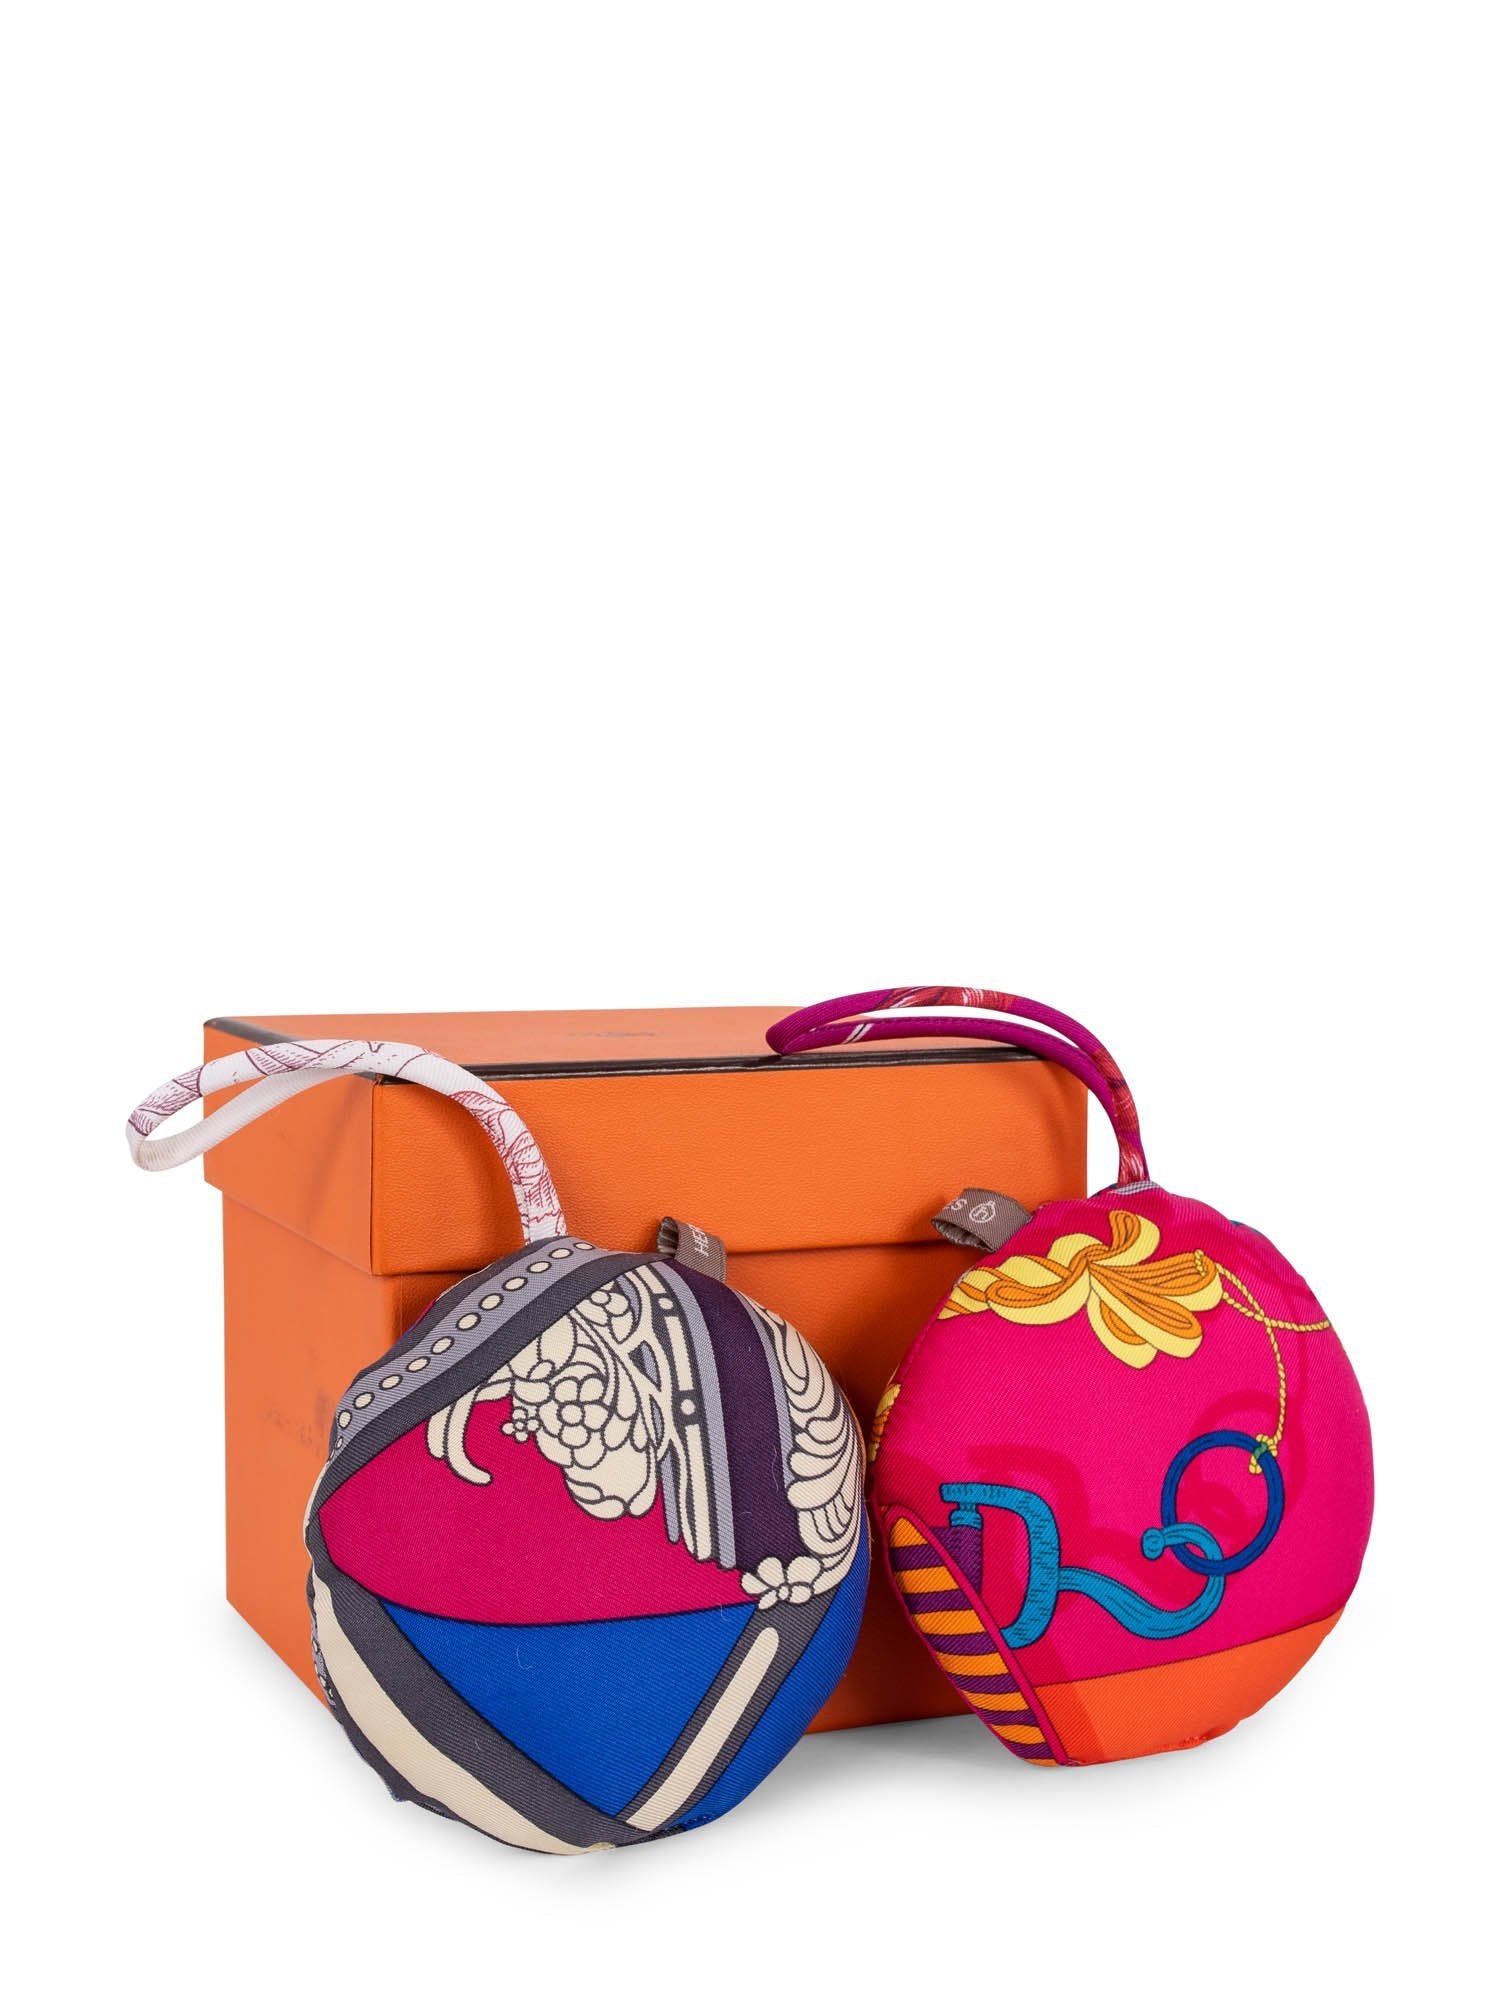 Hermes Silk Ornaments Set of 2 Multicolor-designer resale